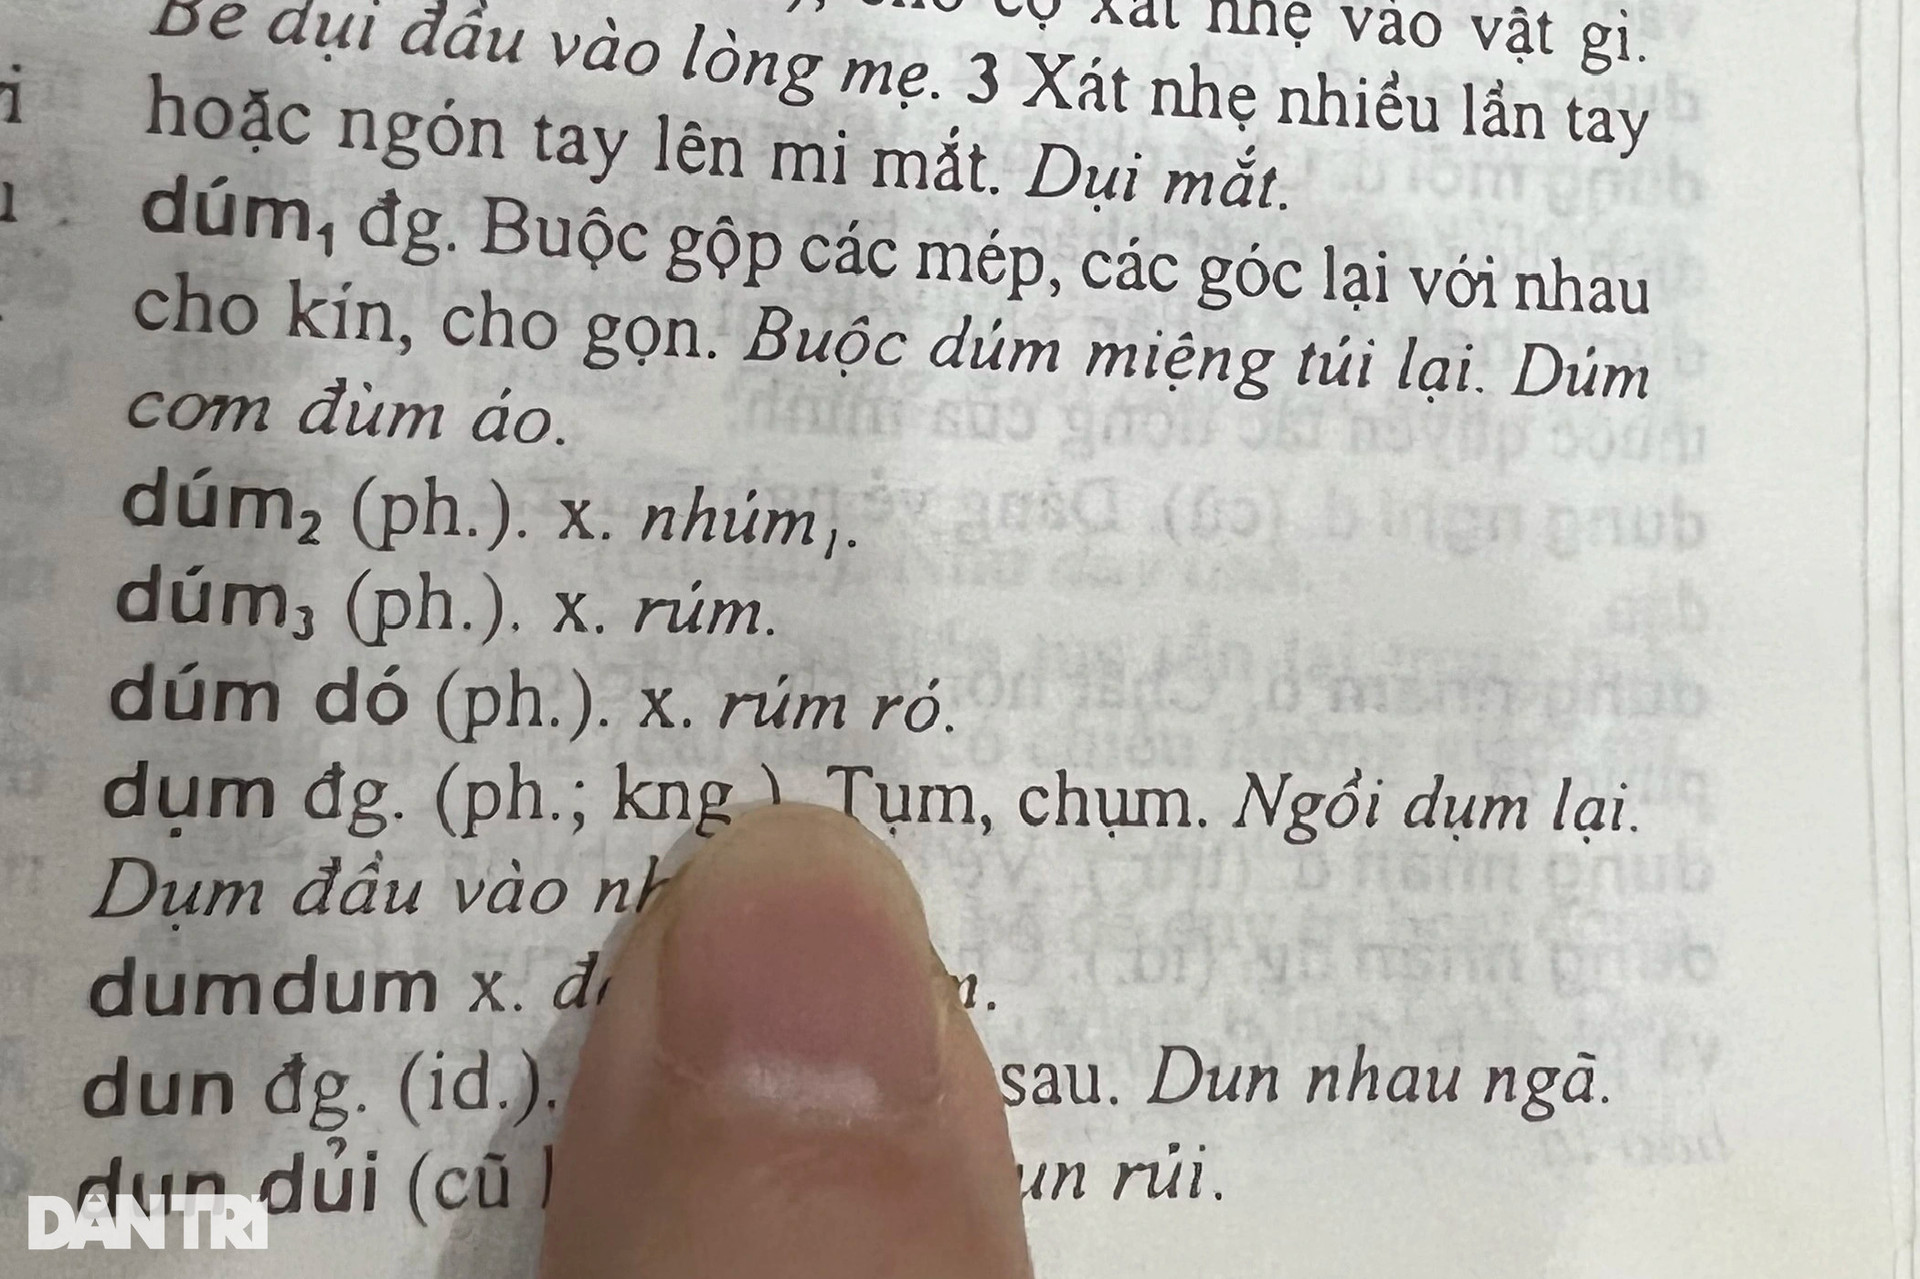 Vua tiếng Việt liên tiếp bị tố đầy sạn, chuyên gia ngôn ngữ học lên tiếng - 6